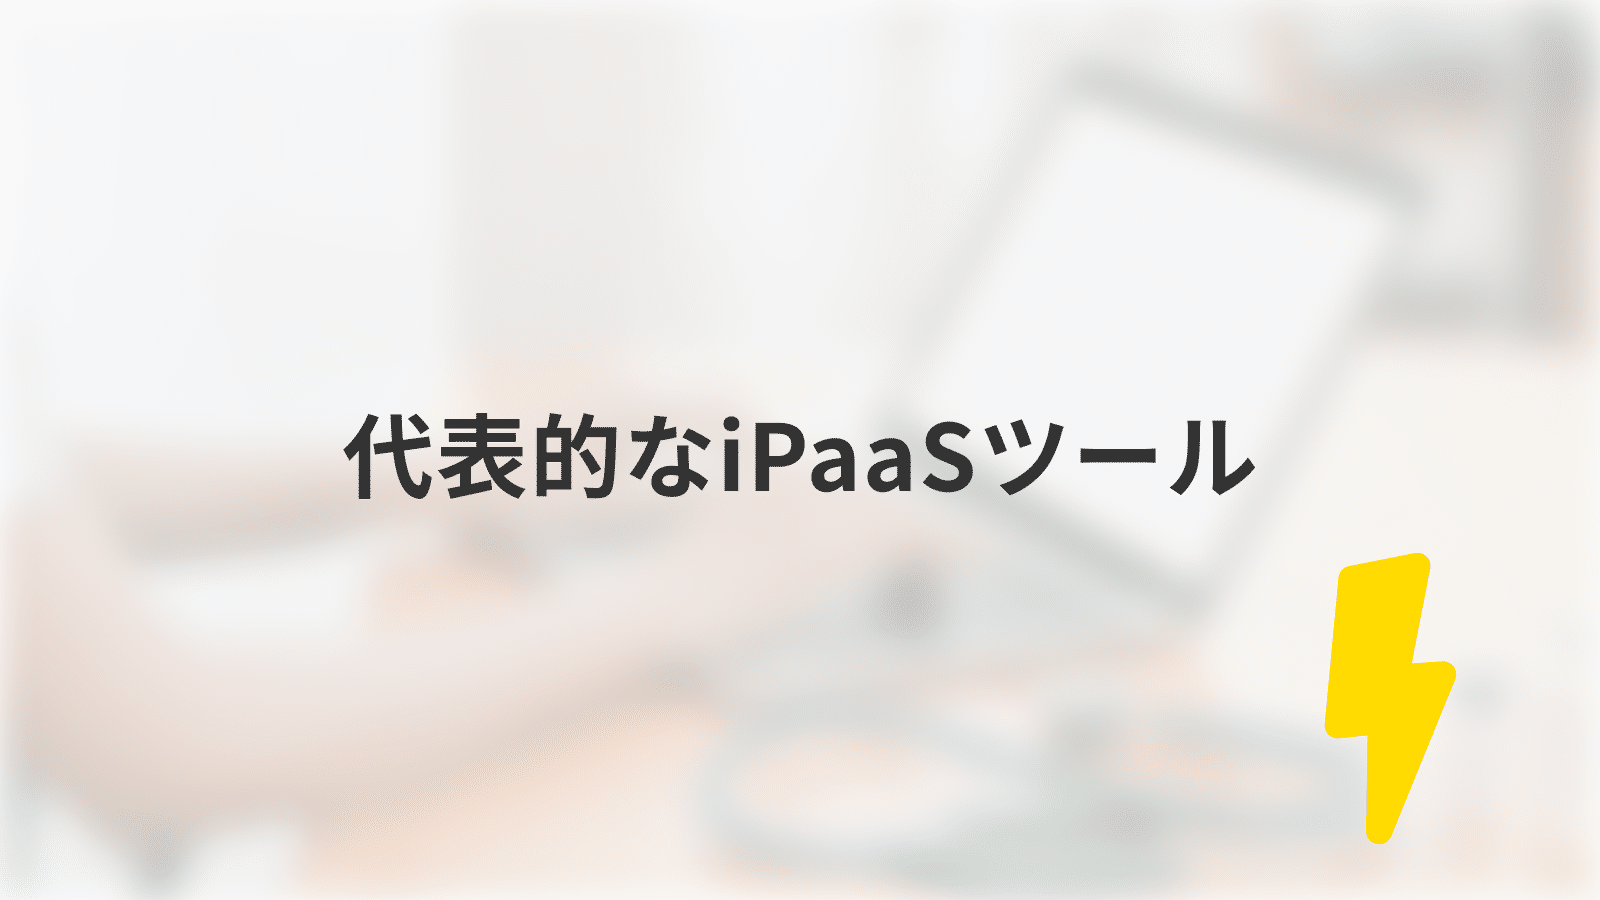 代表的なiPaaSツール